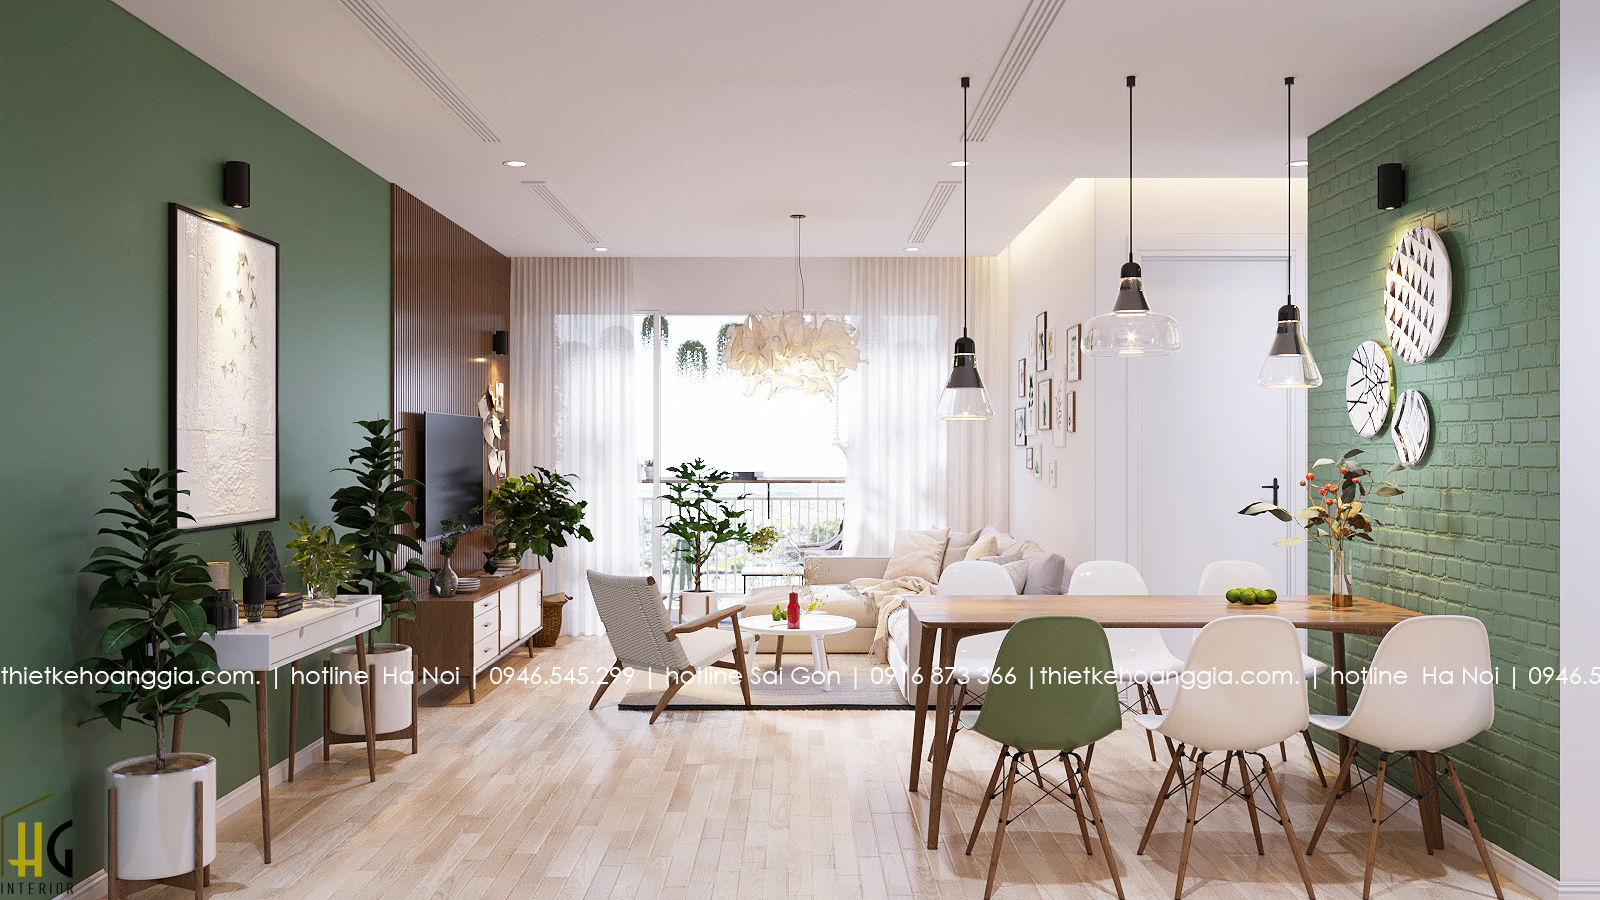 Thiết kế nội thất chung cư 55m cho chị Lan Anh, Nội Thất Hoàng Gia Nội Thất Hoàng Gia 客廳